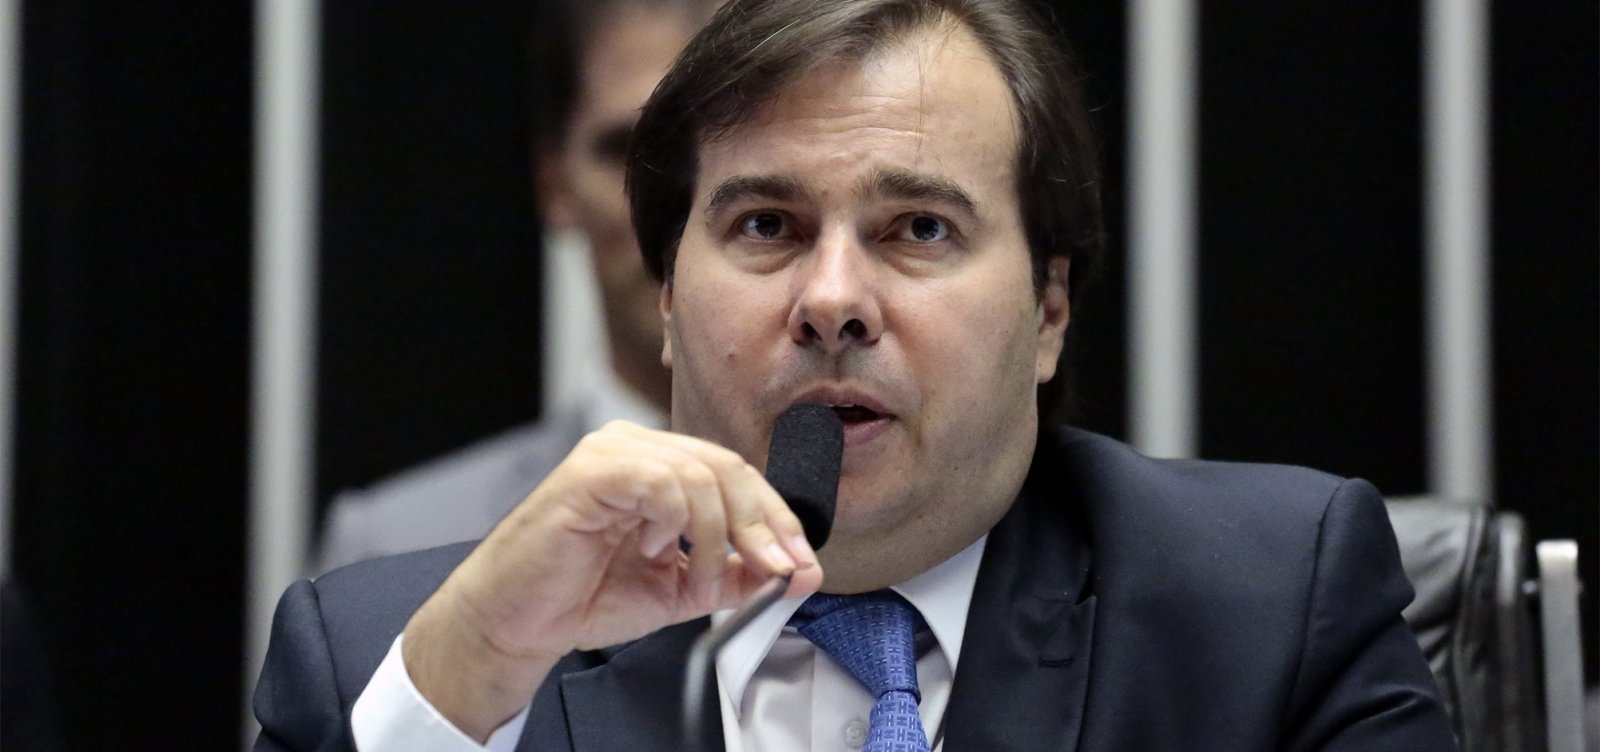 'Reação desproporcional', diz Maia sobre ameaça de Bolsonaro a jornalista